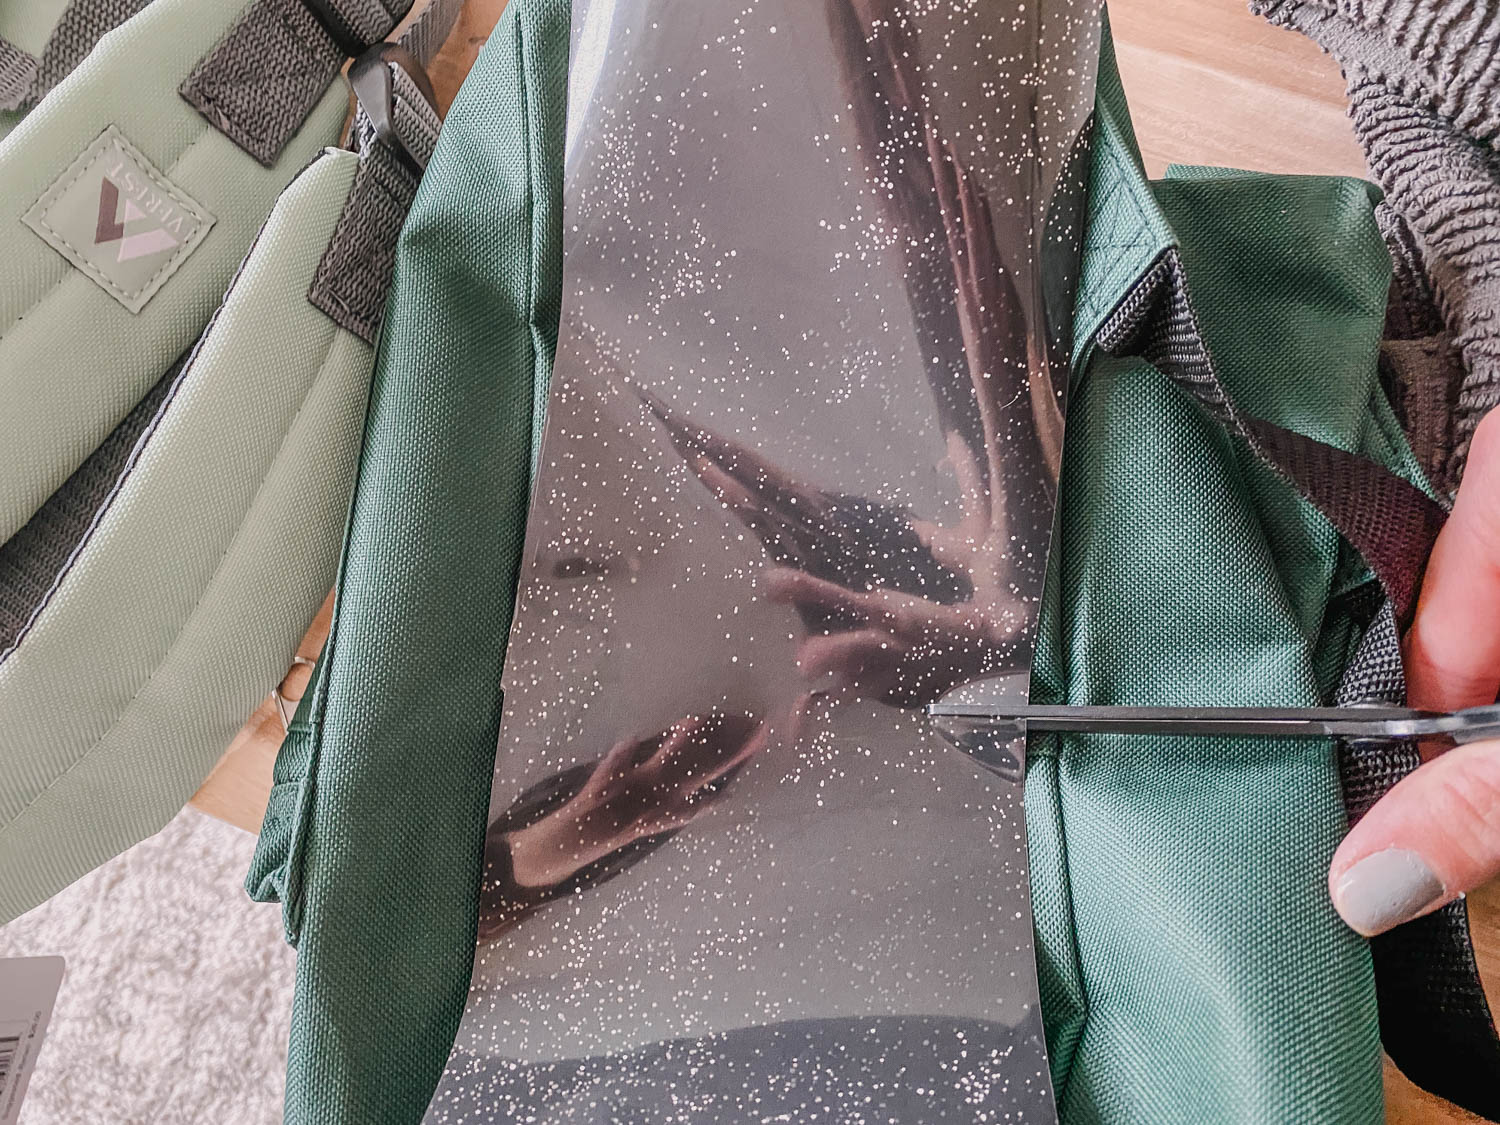 Patterned iron on vinyl for backpacks